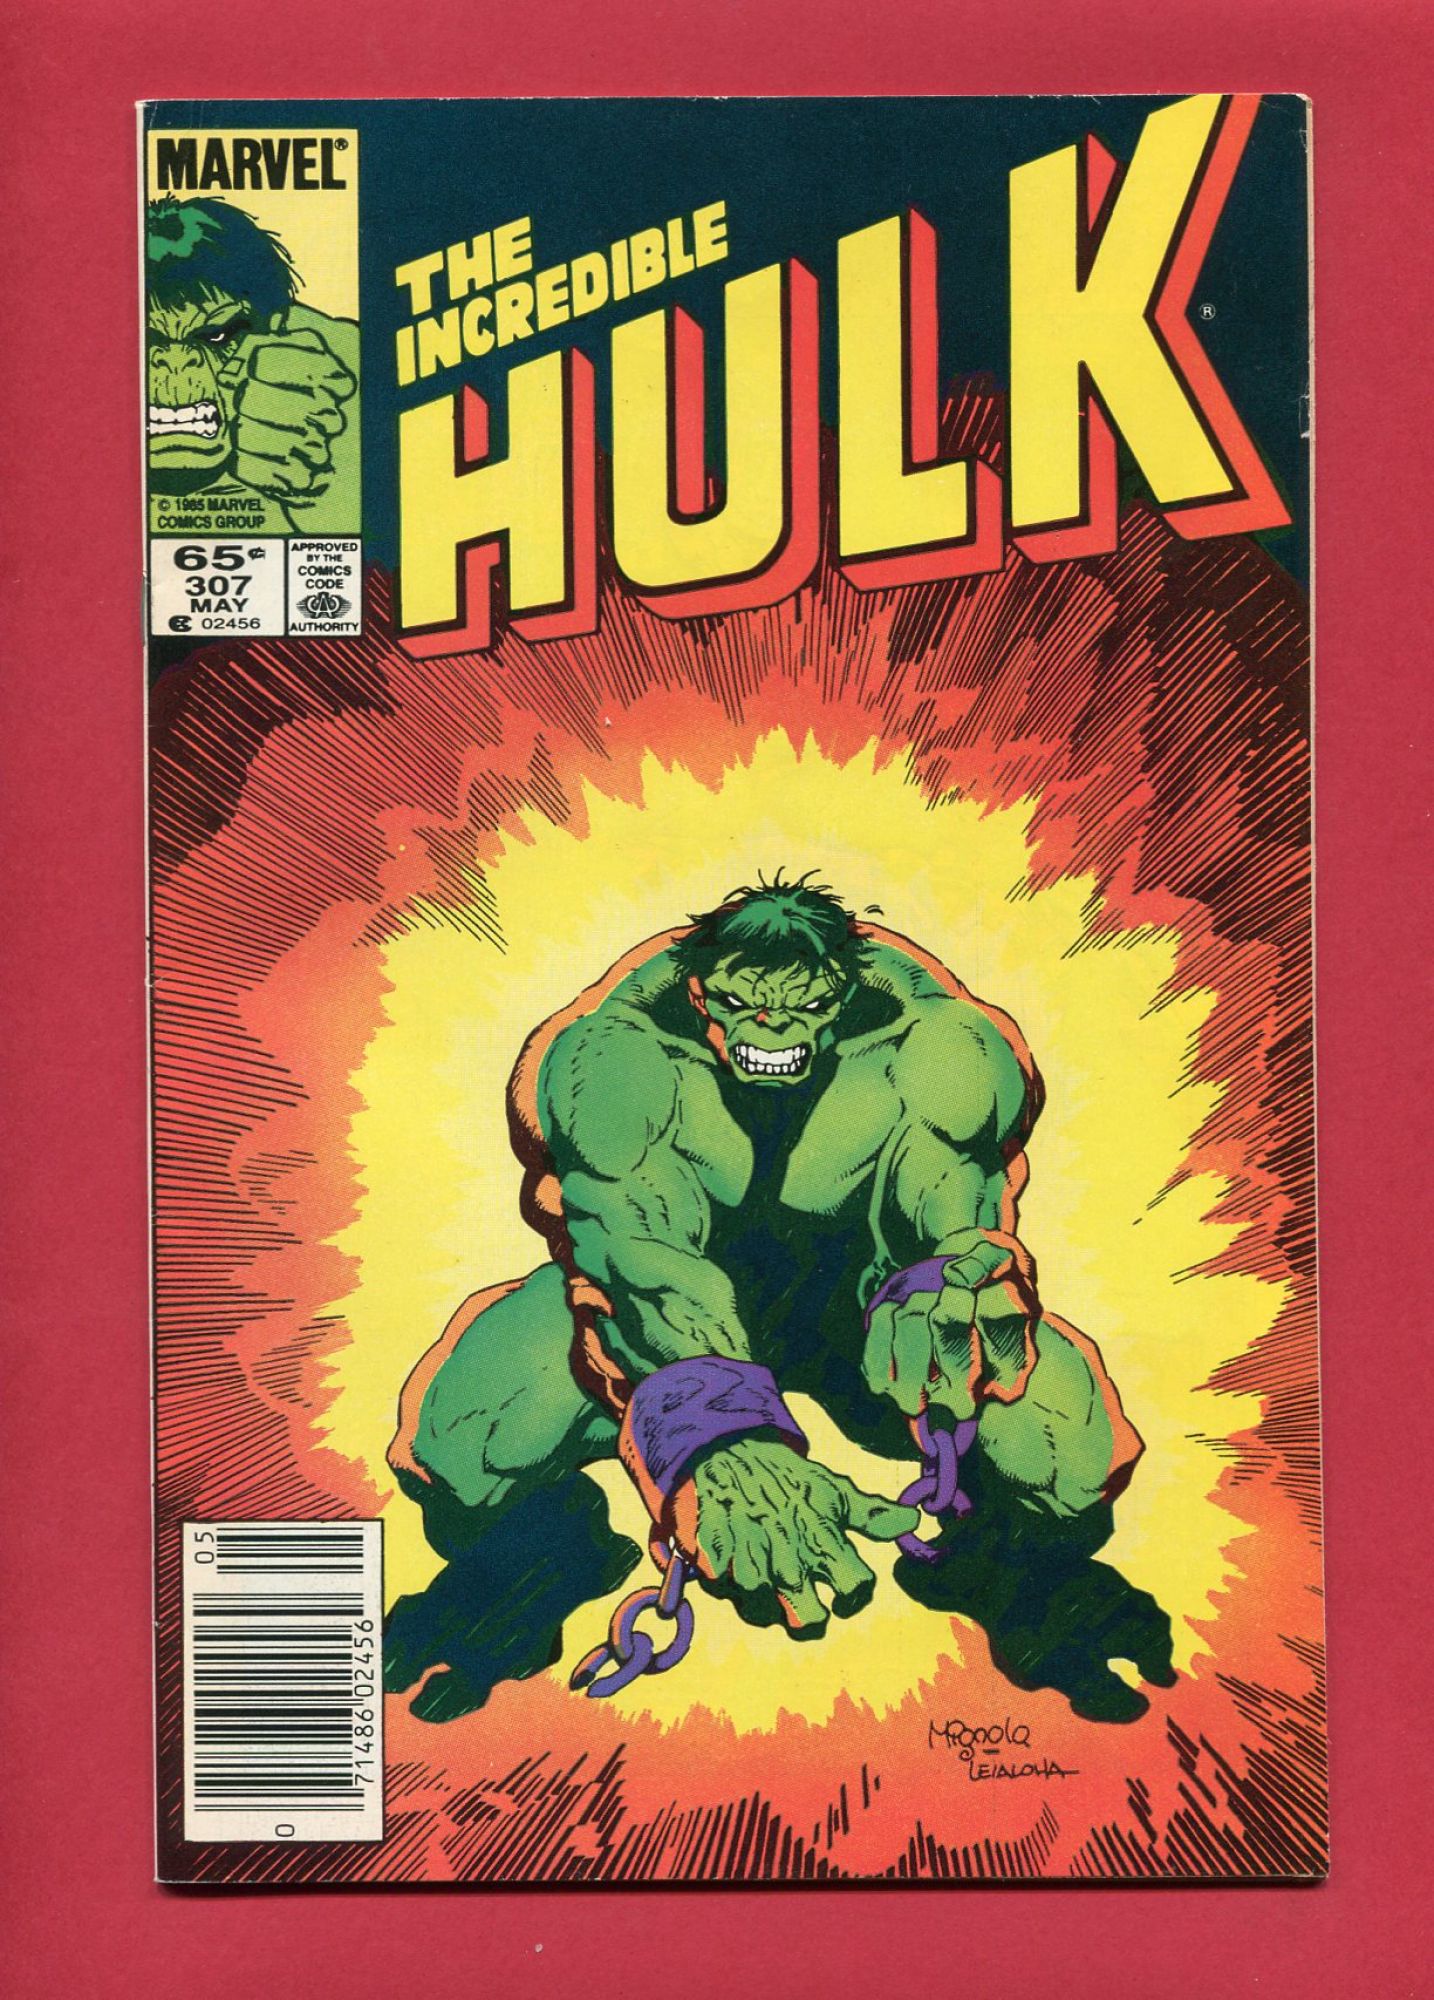 Incredible Hulk #307, May 1985, 7.0 FN/|VF